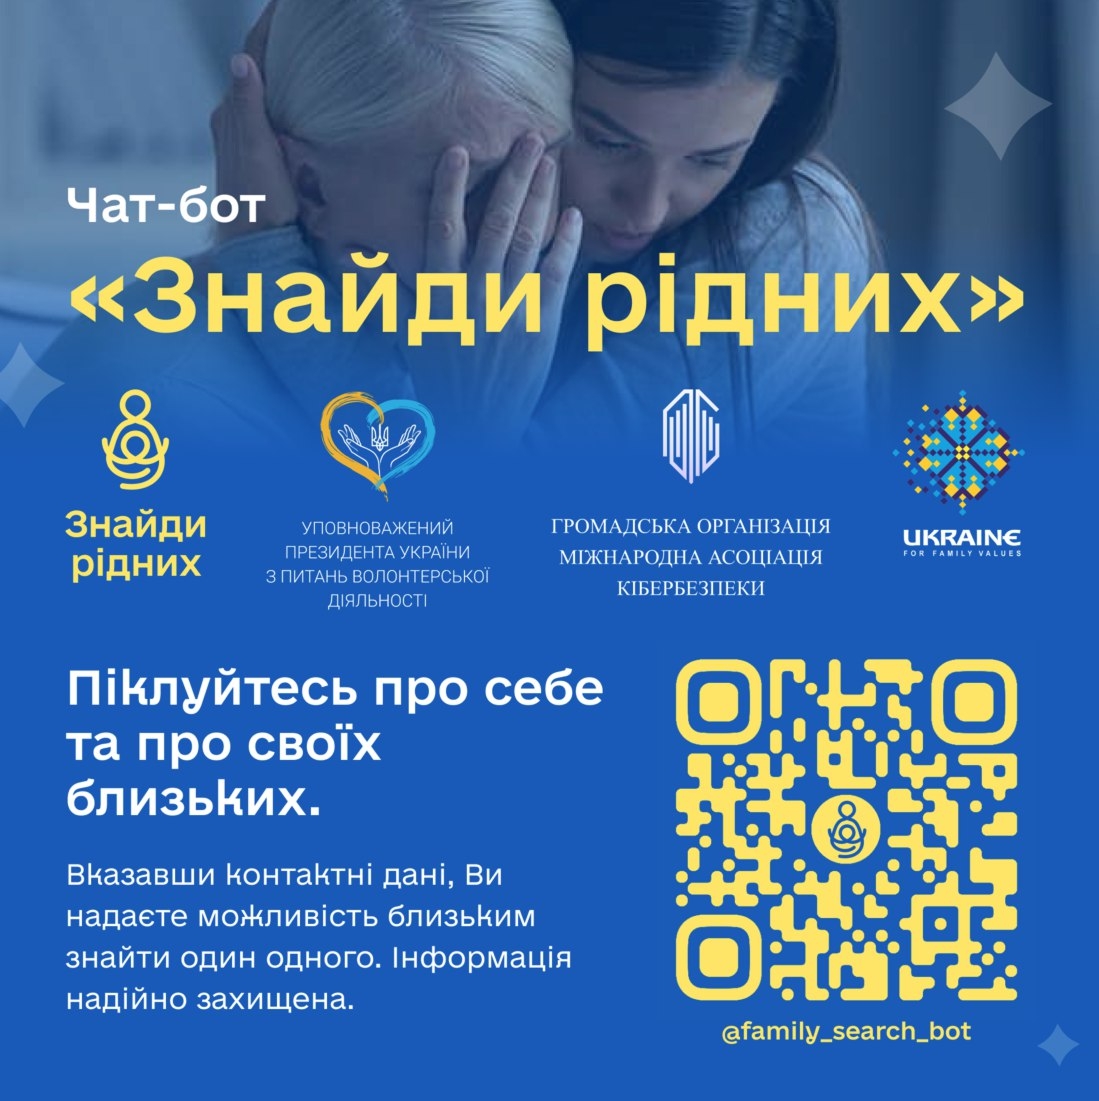 Чат-бот Знайди рідних допоможе українцям, які втратили зв‘язок з рідними